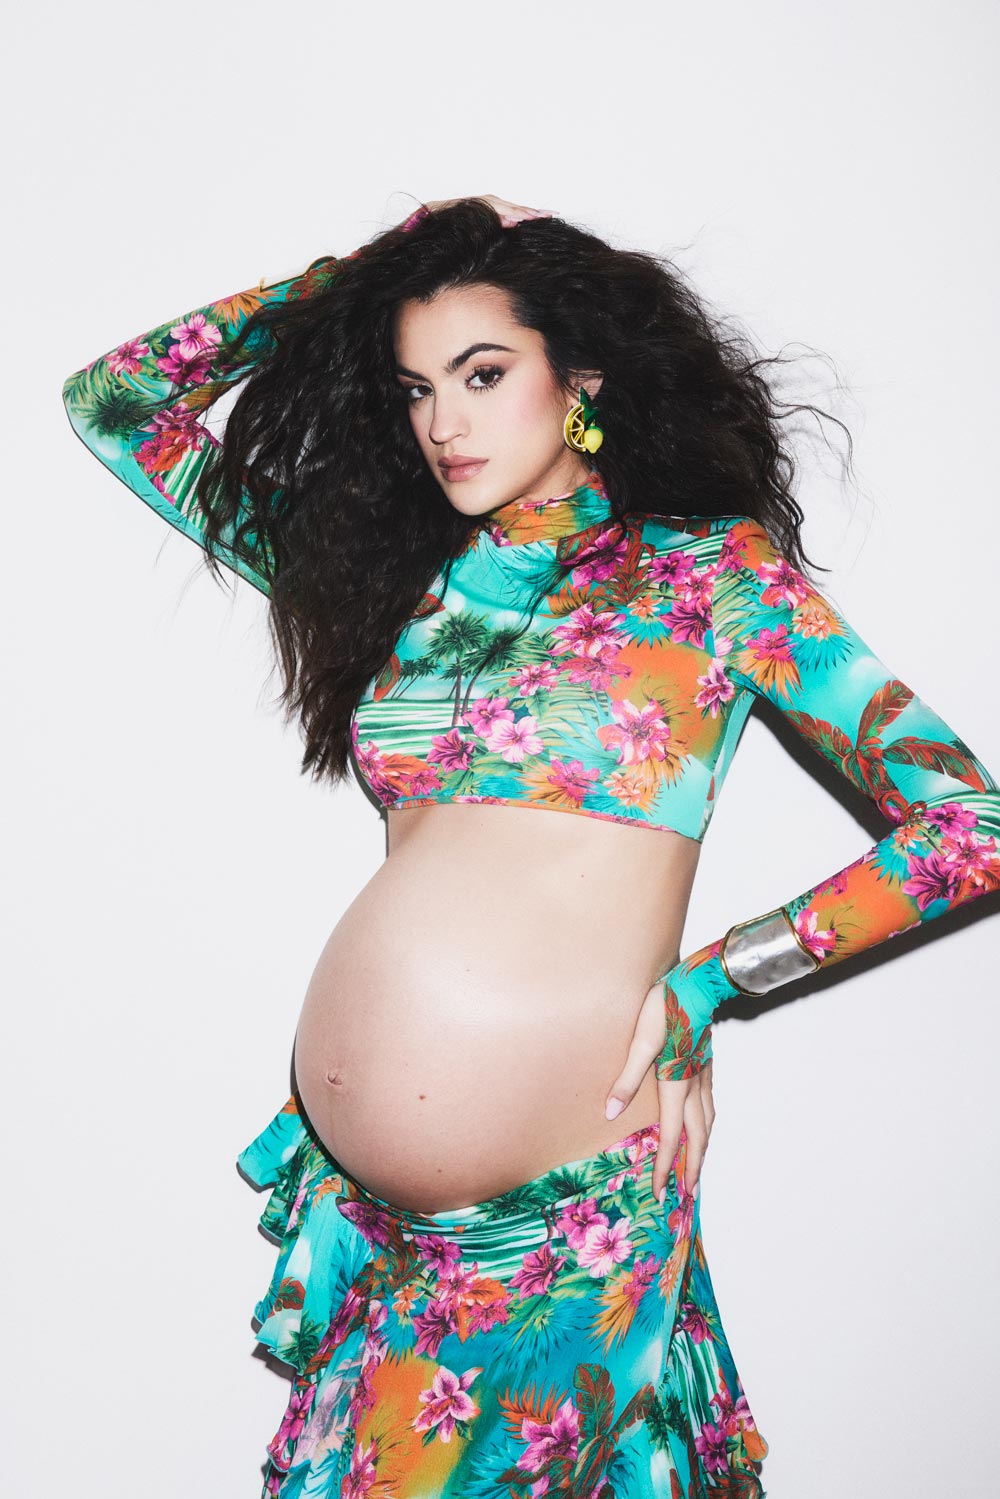 marta lozano embarazada de moda